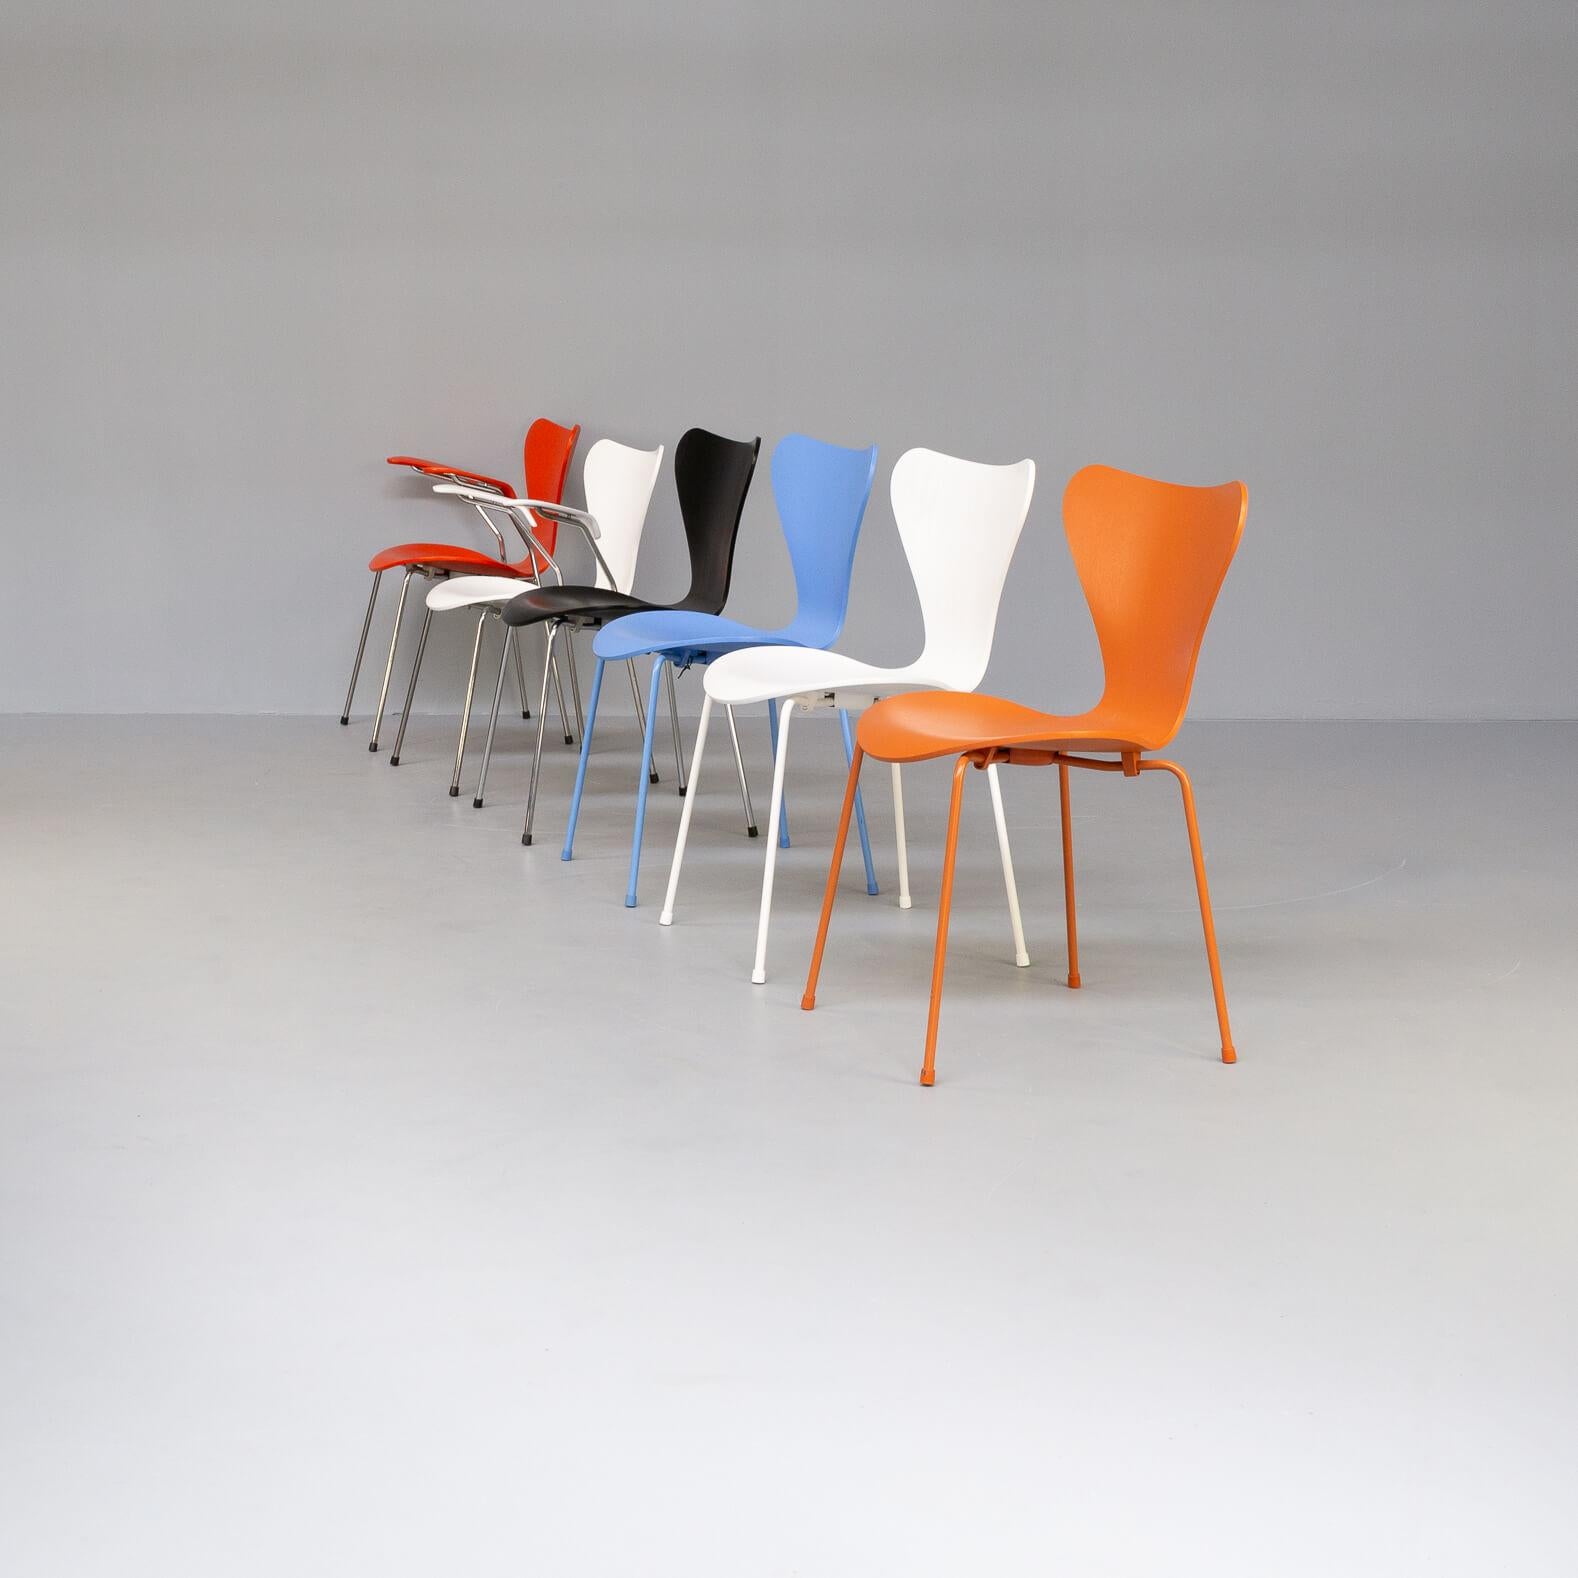 La chaise modèle 3107 est une chaise conçue par Arne Jacobsen en 1955. Il s'agit d'une variante de la chaise Fourmi, également conçue par Jacobsen.
Selon Jacobsen, la 3107 a été inspirée par une chaise fabriquée par Charles et Ray Eames, l'équipe